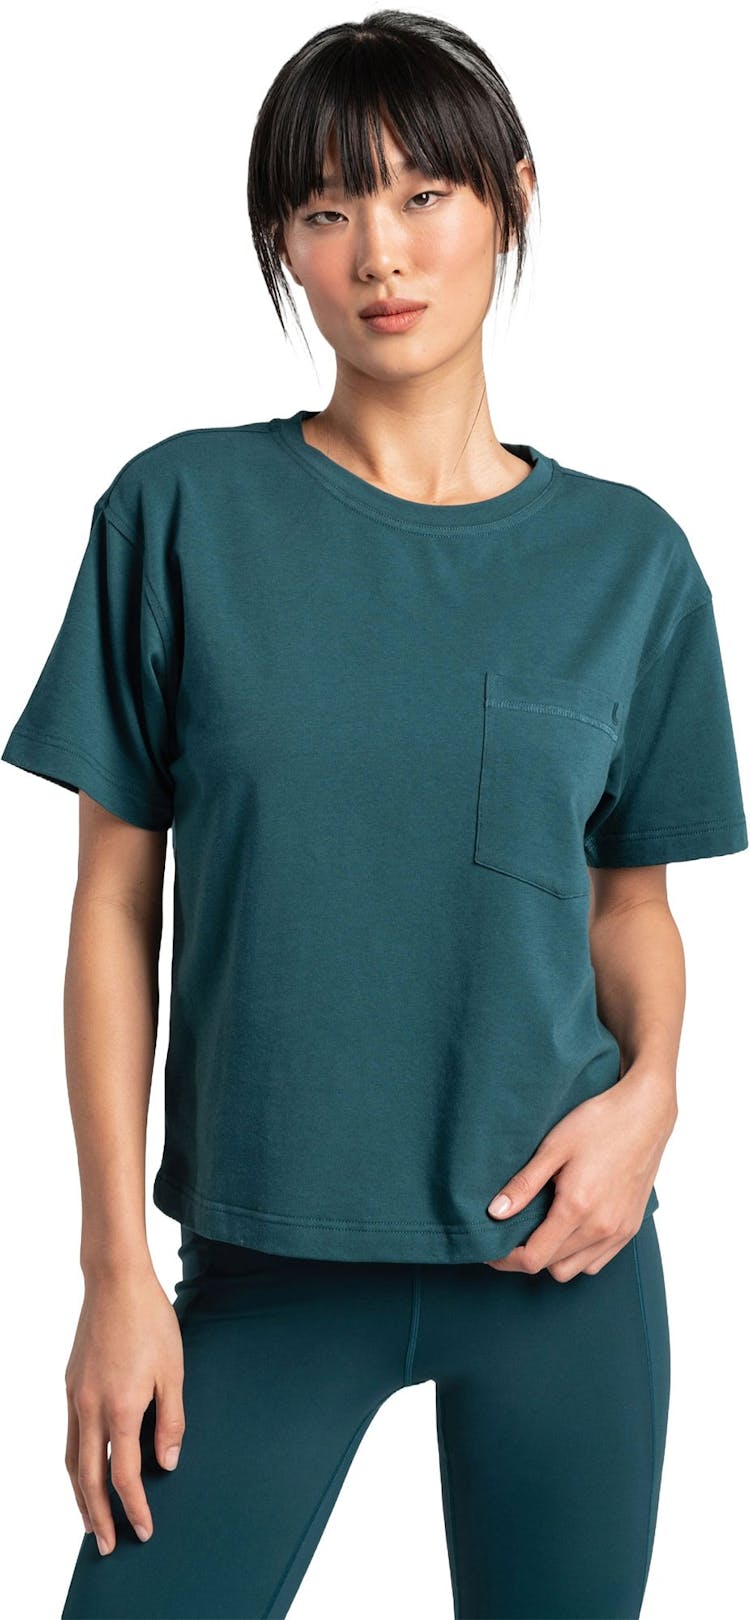 Numéro de l'image de la galerie de produits 1 pour le produit T-shirt en coton Effortless - Femme